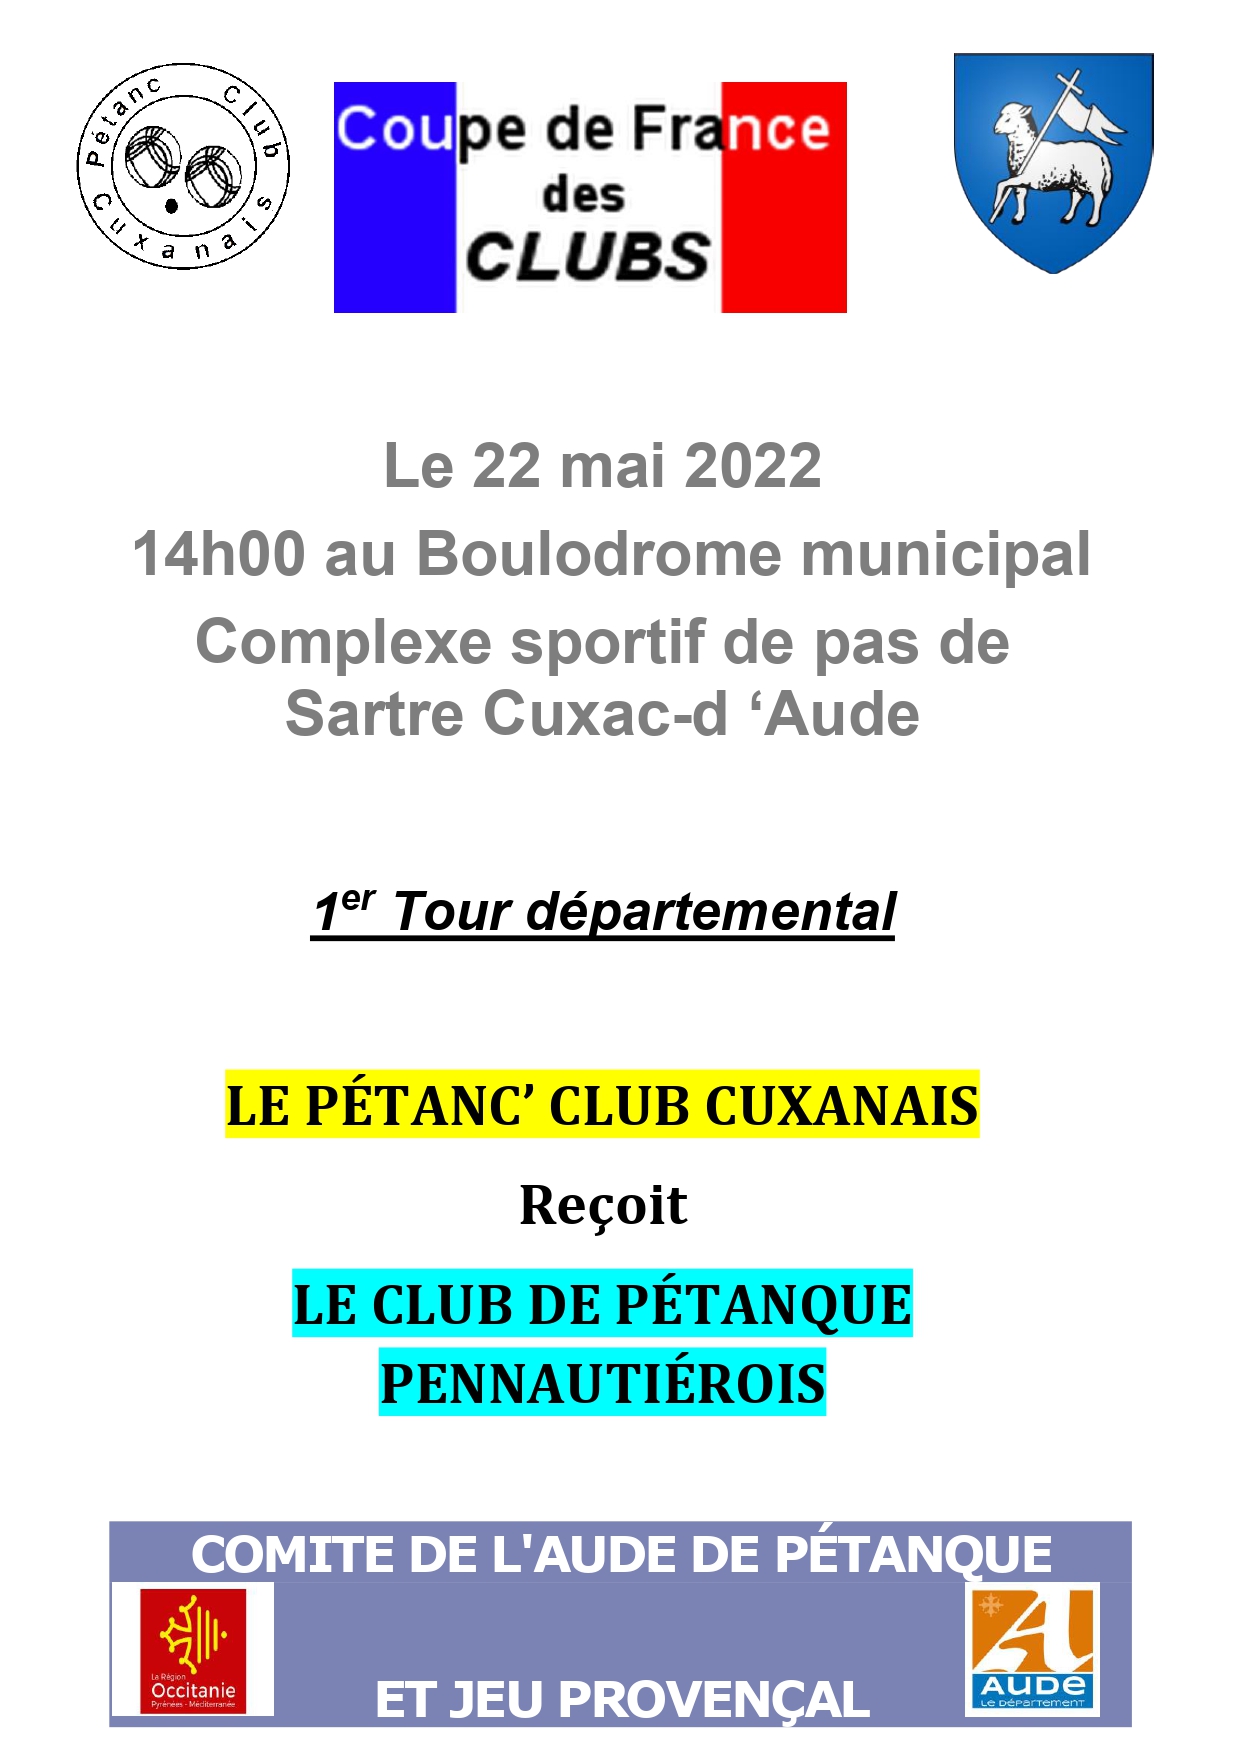 Coupe de France des Clubs